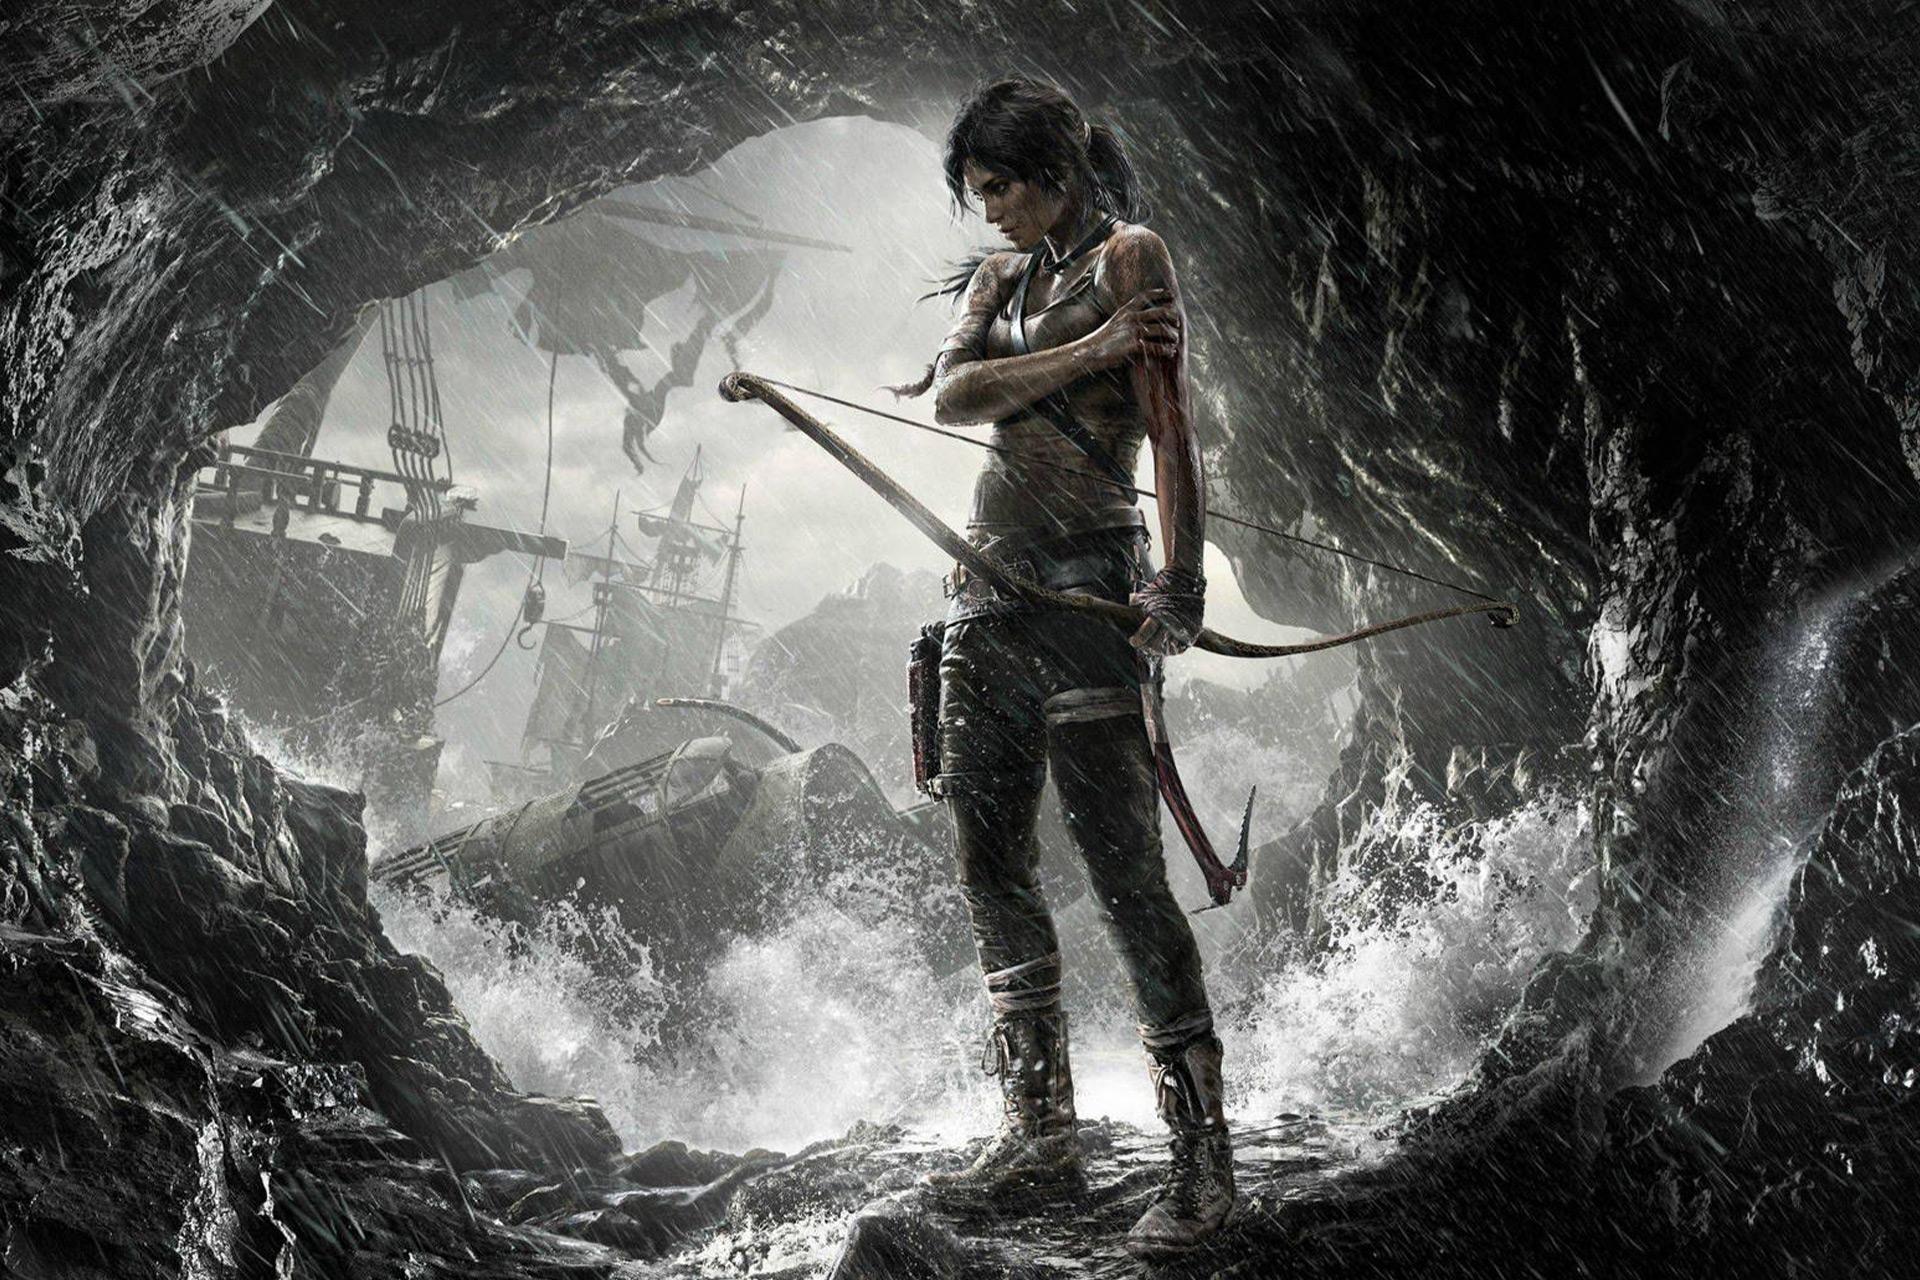 تصویر شخصیت لارا کرافت در بازی Tomb Raider که با تیر و کمان ایستاده است